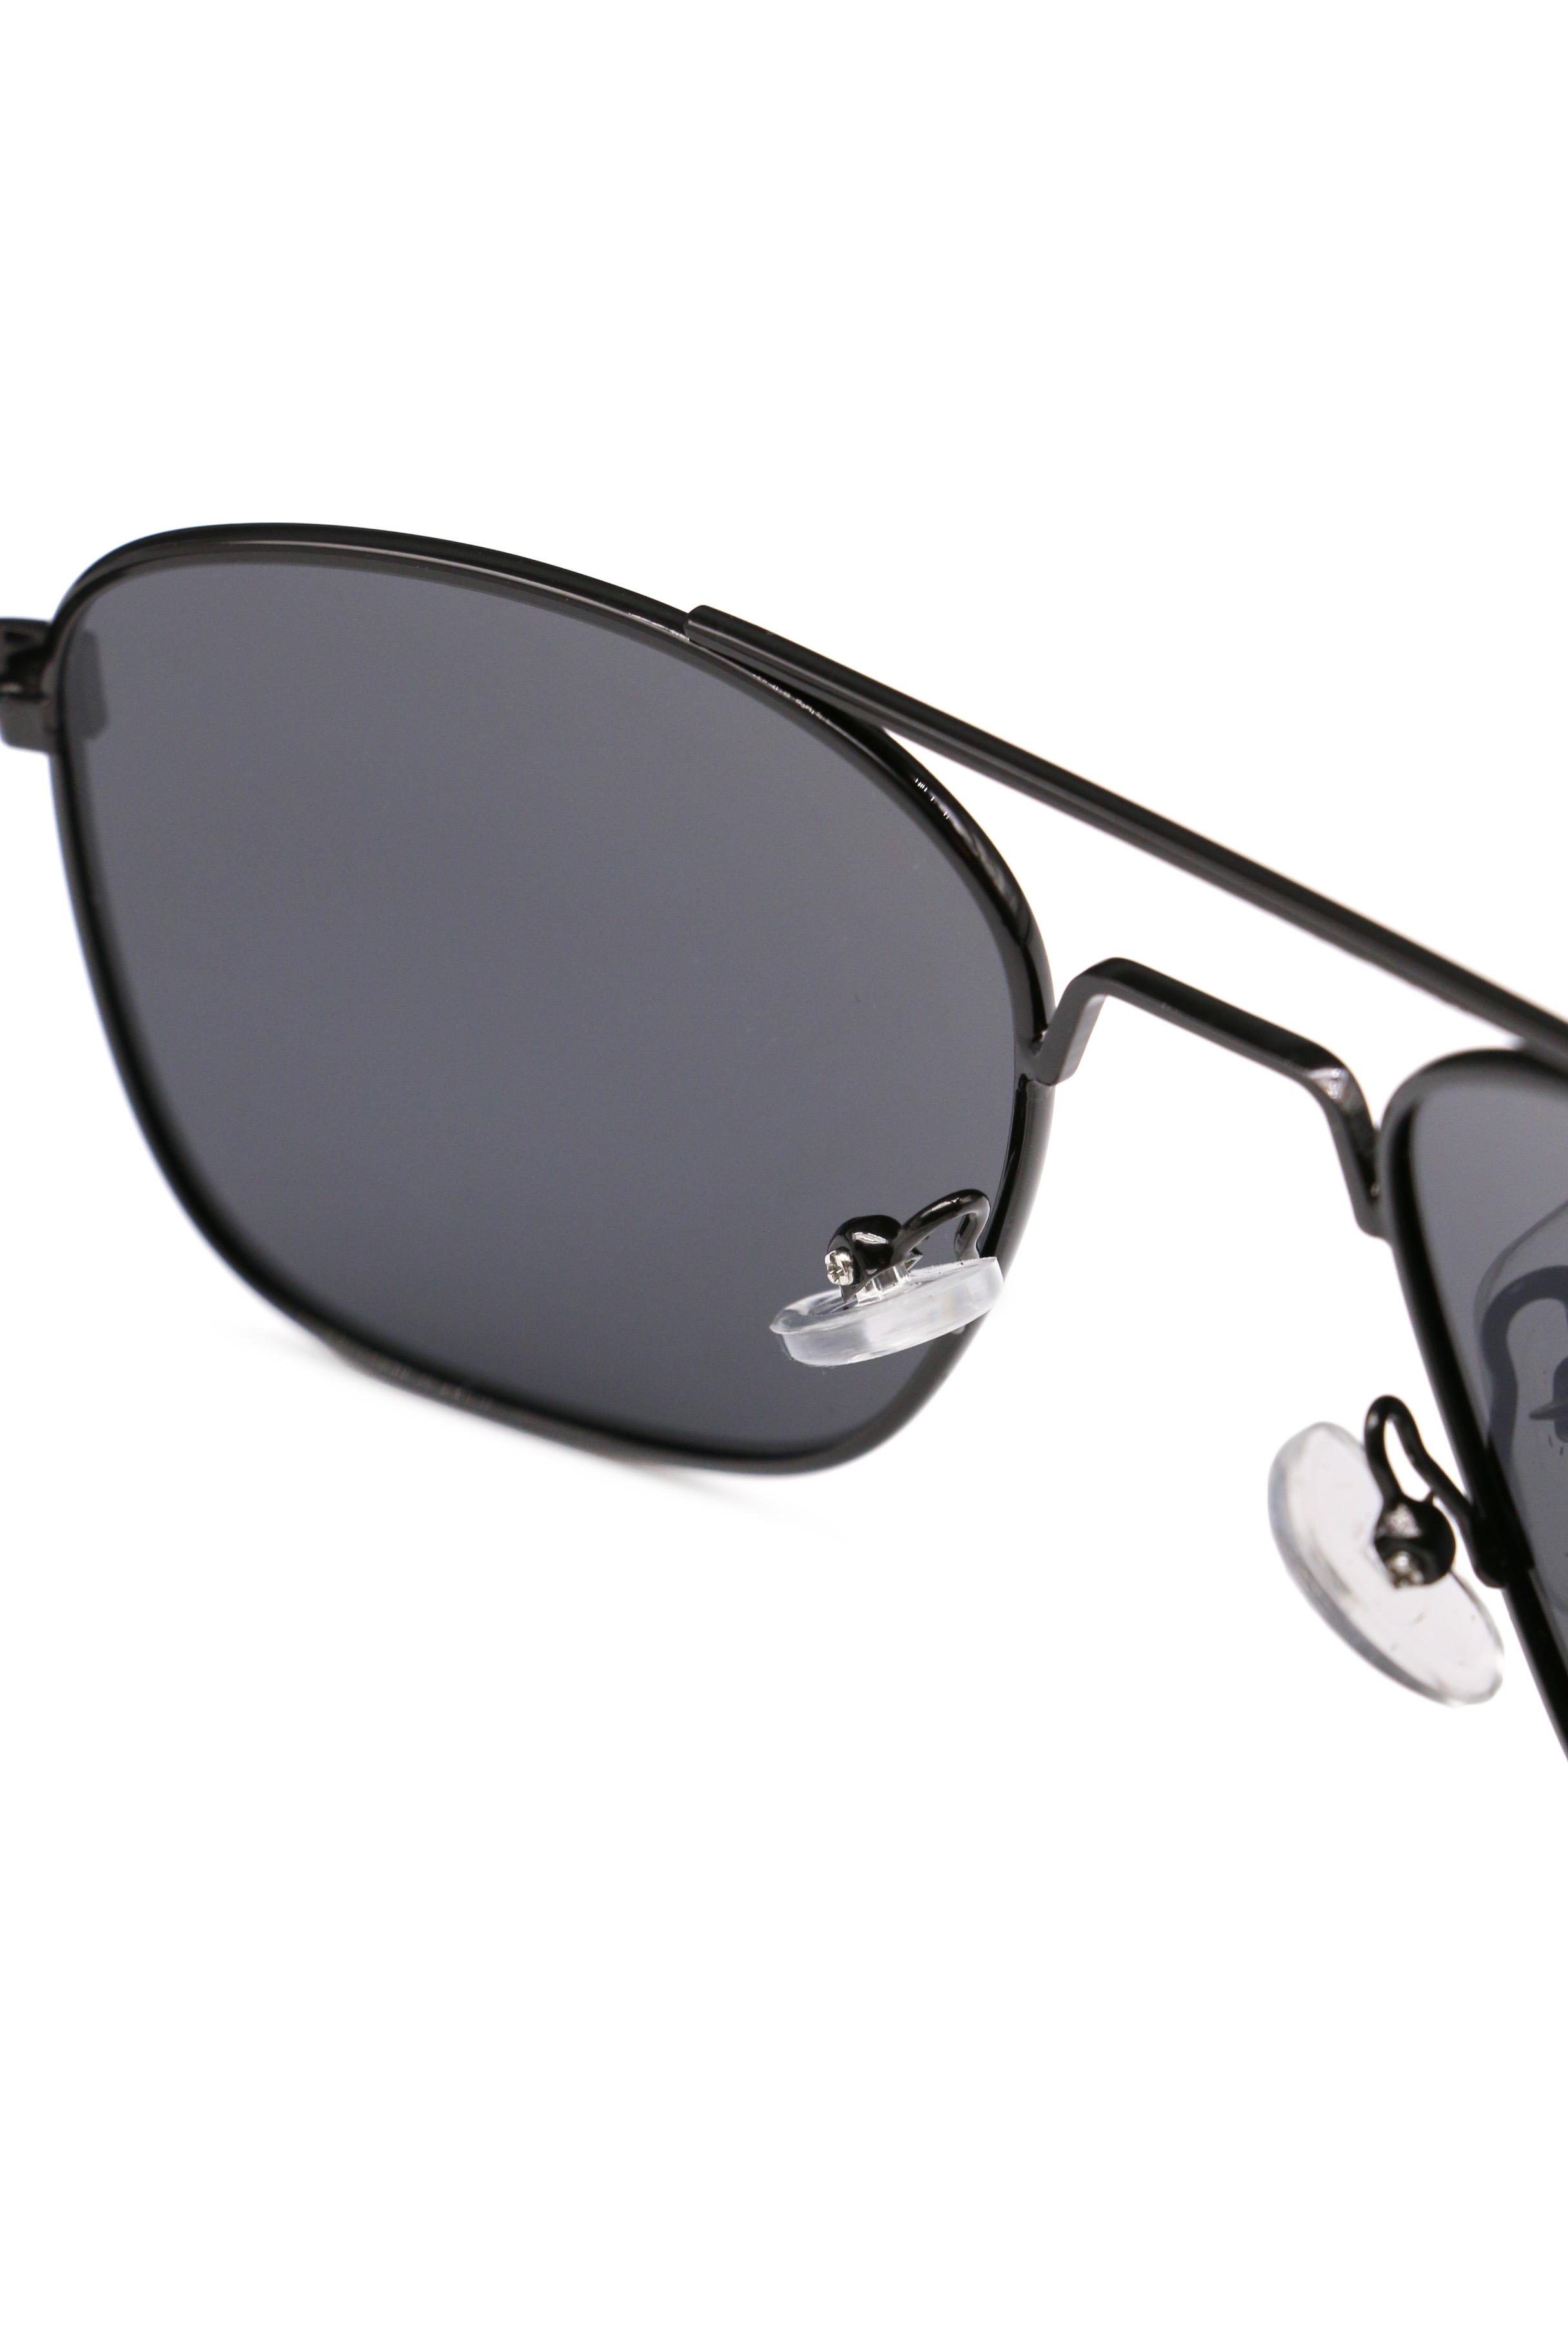 P1053-1, Солнцезащитные очки в алюминиевой оправе POLAR STYLE